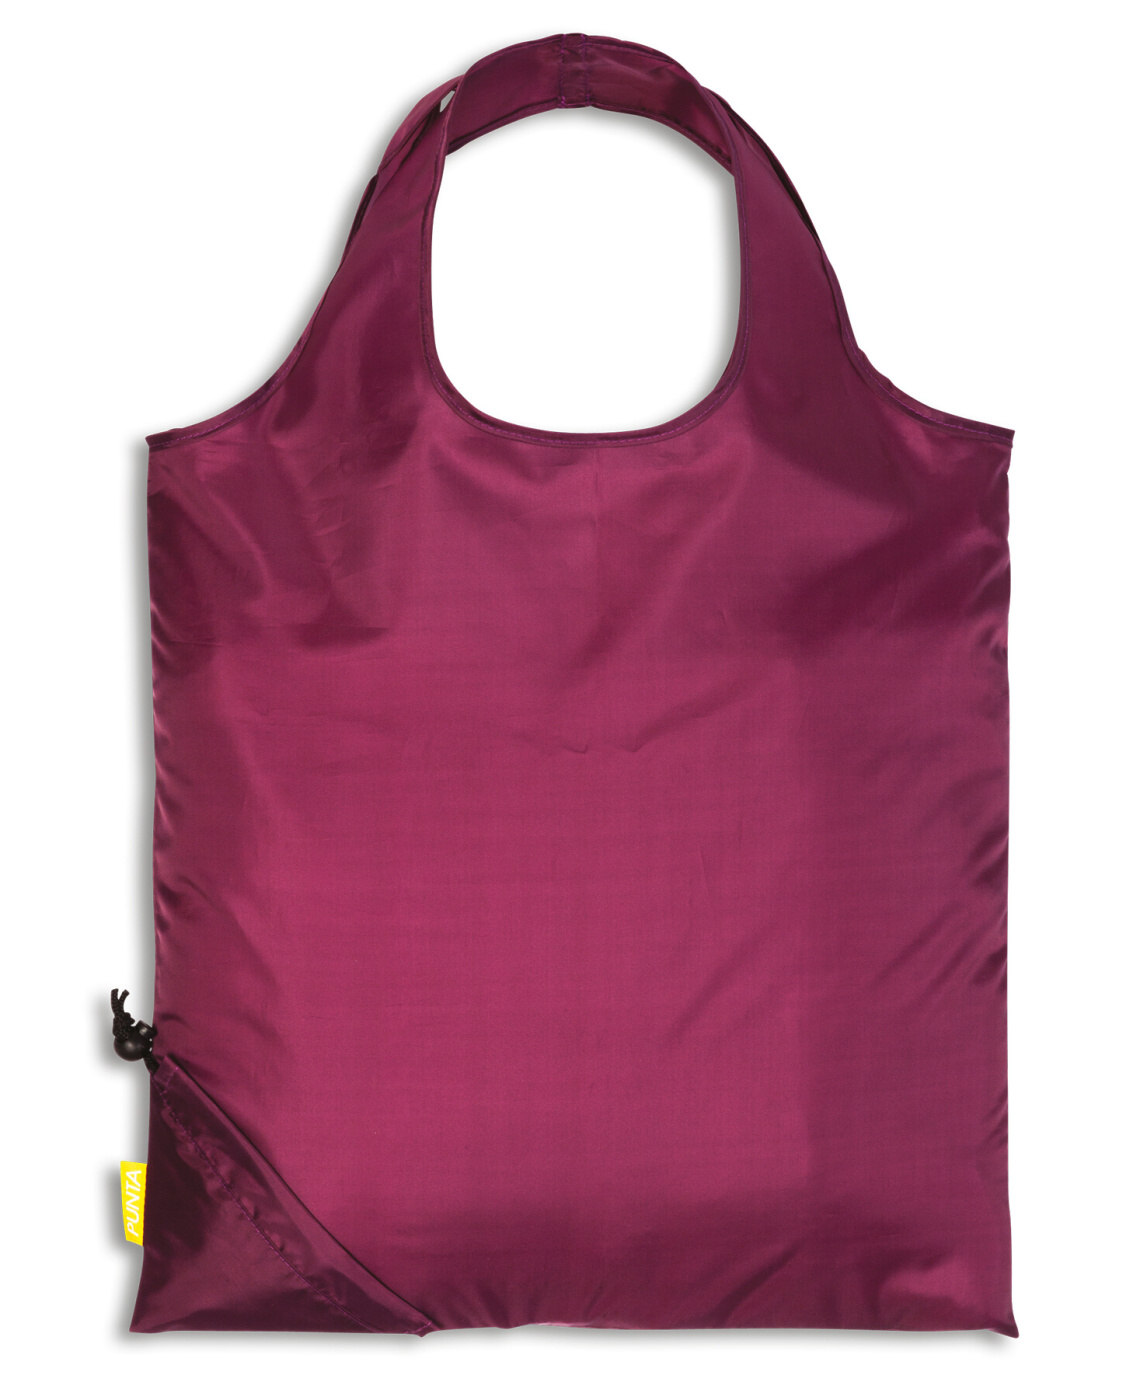 Fabrizio Skládací nákupní taška Punta comfort 10268-3000 16 L fialová